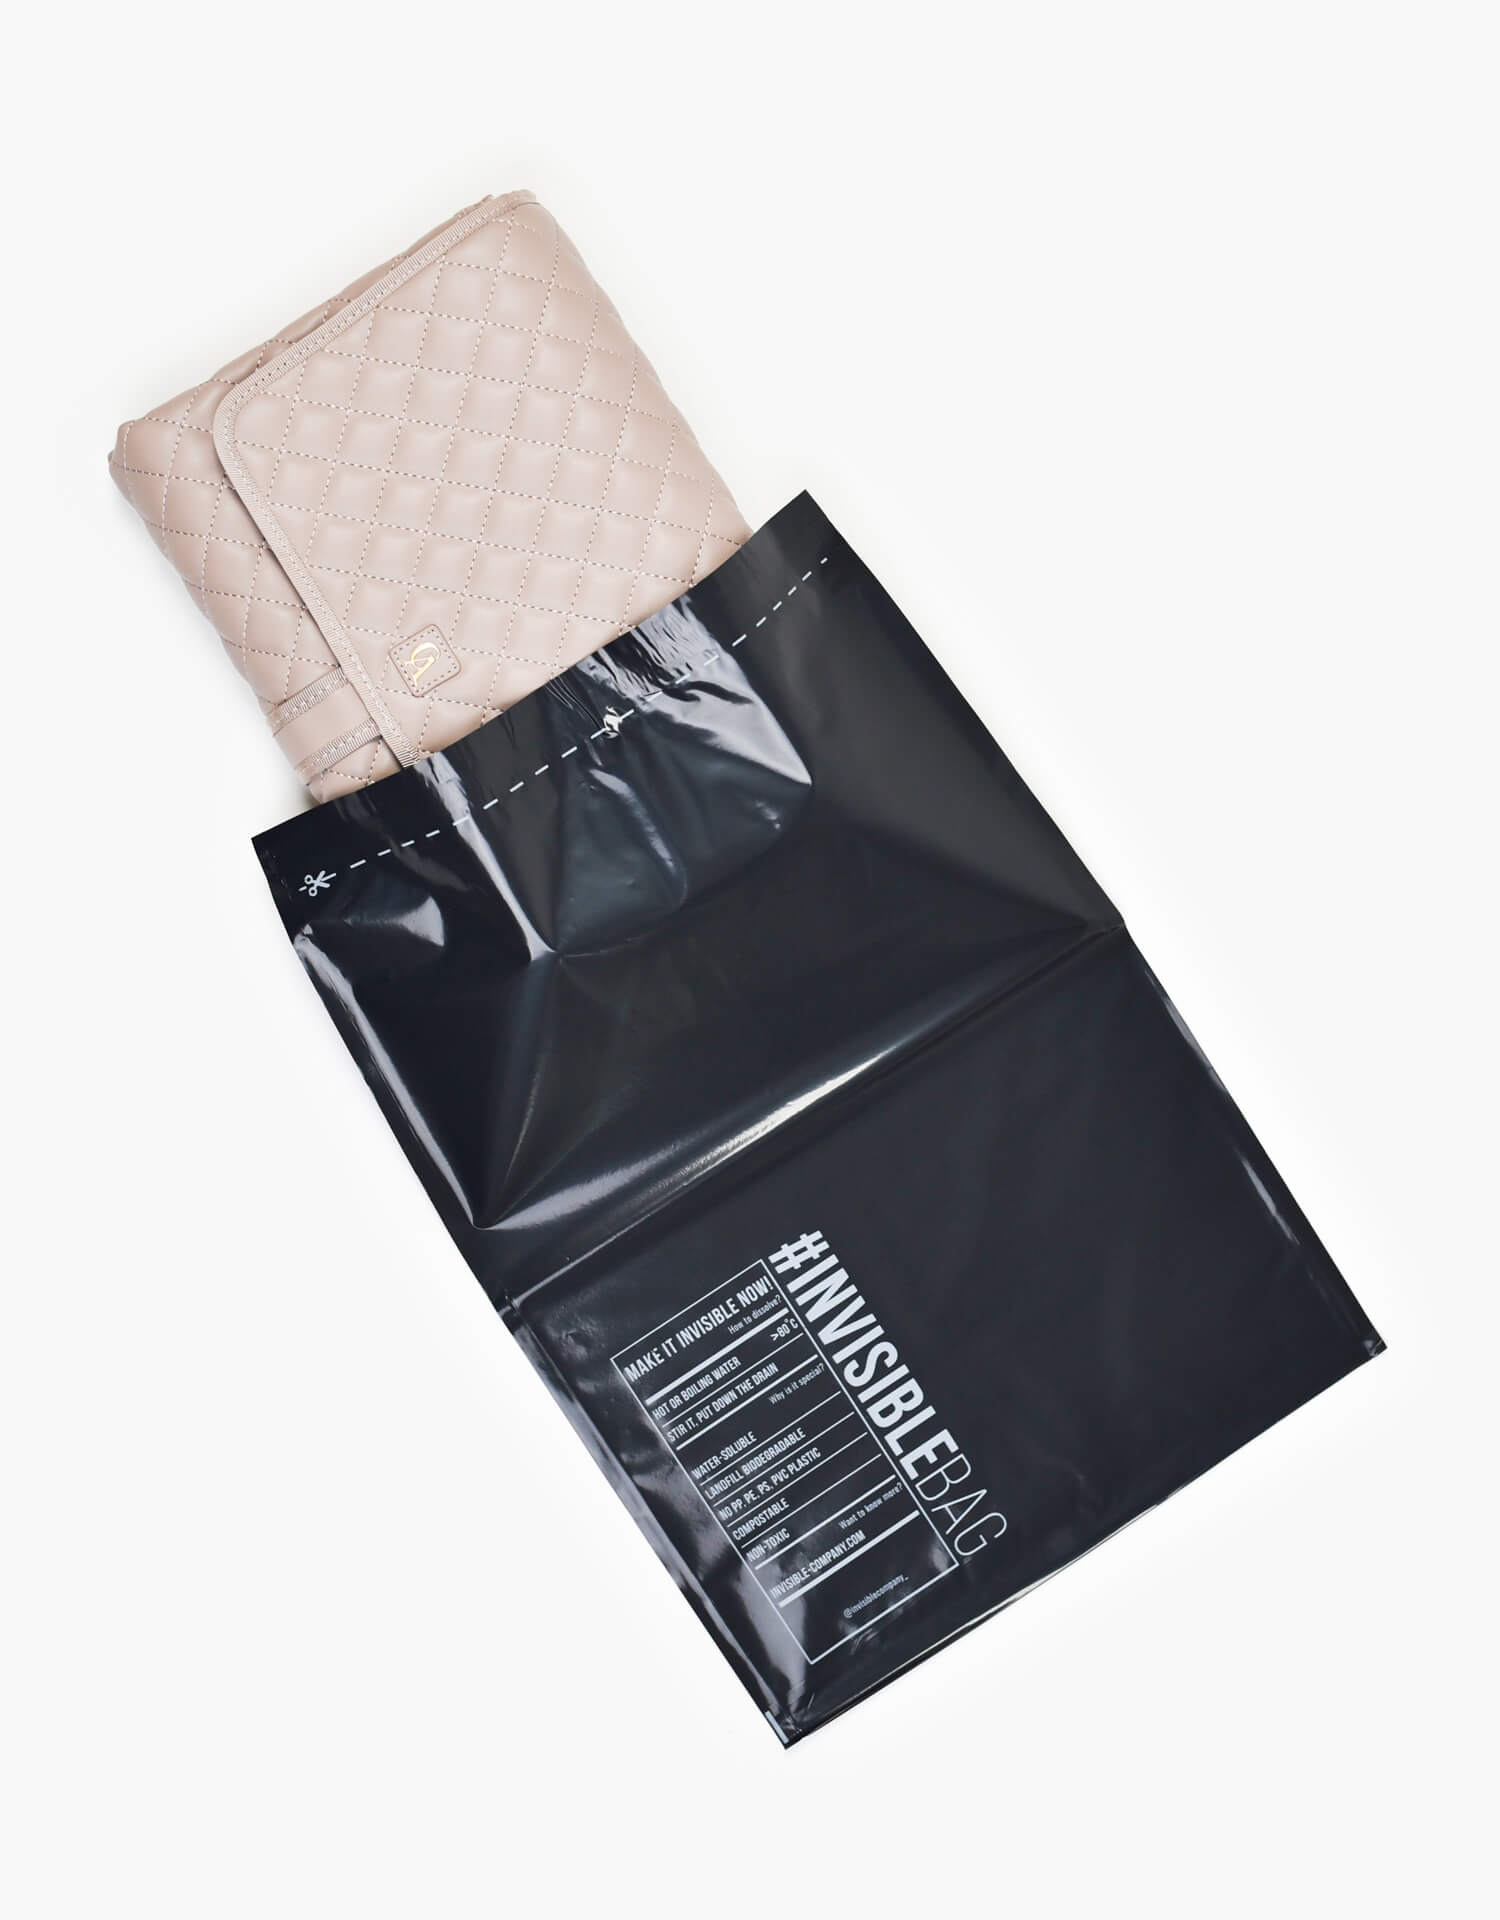 Diaper bag in sustainable packaging